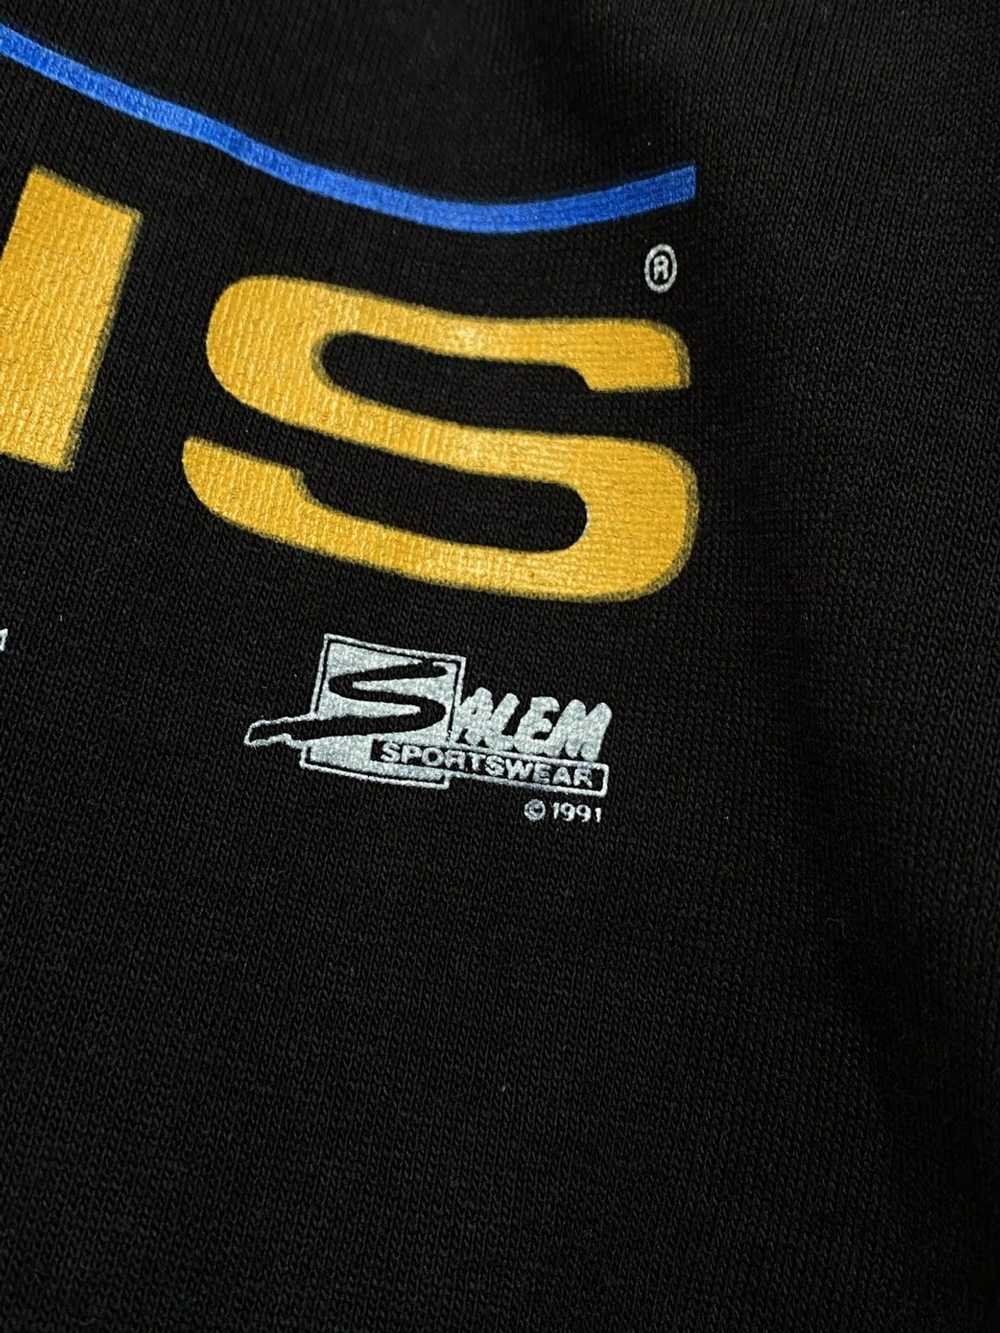 Delta × NFL × Salem Sportswear 1991 Penguins Cham… - image 4